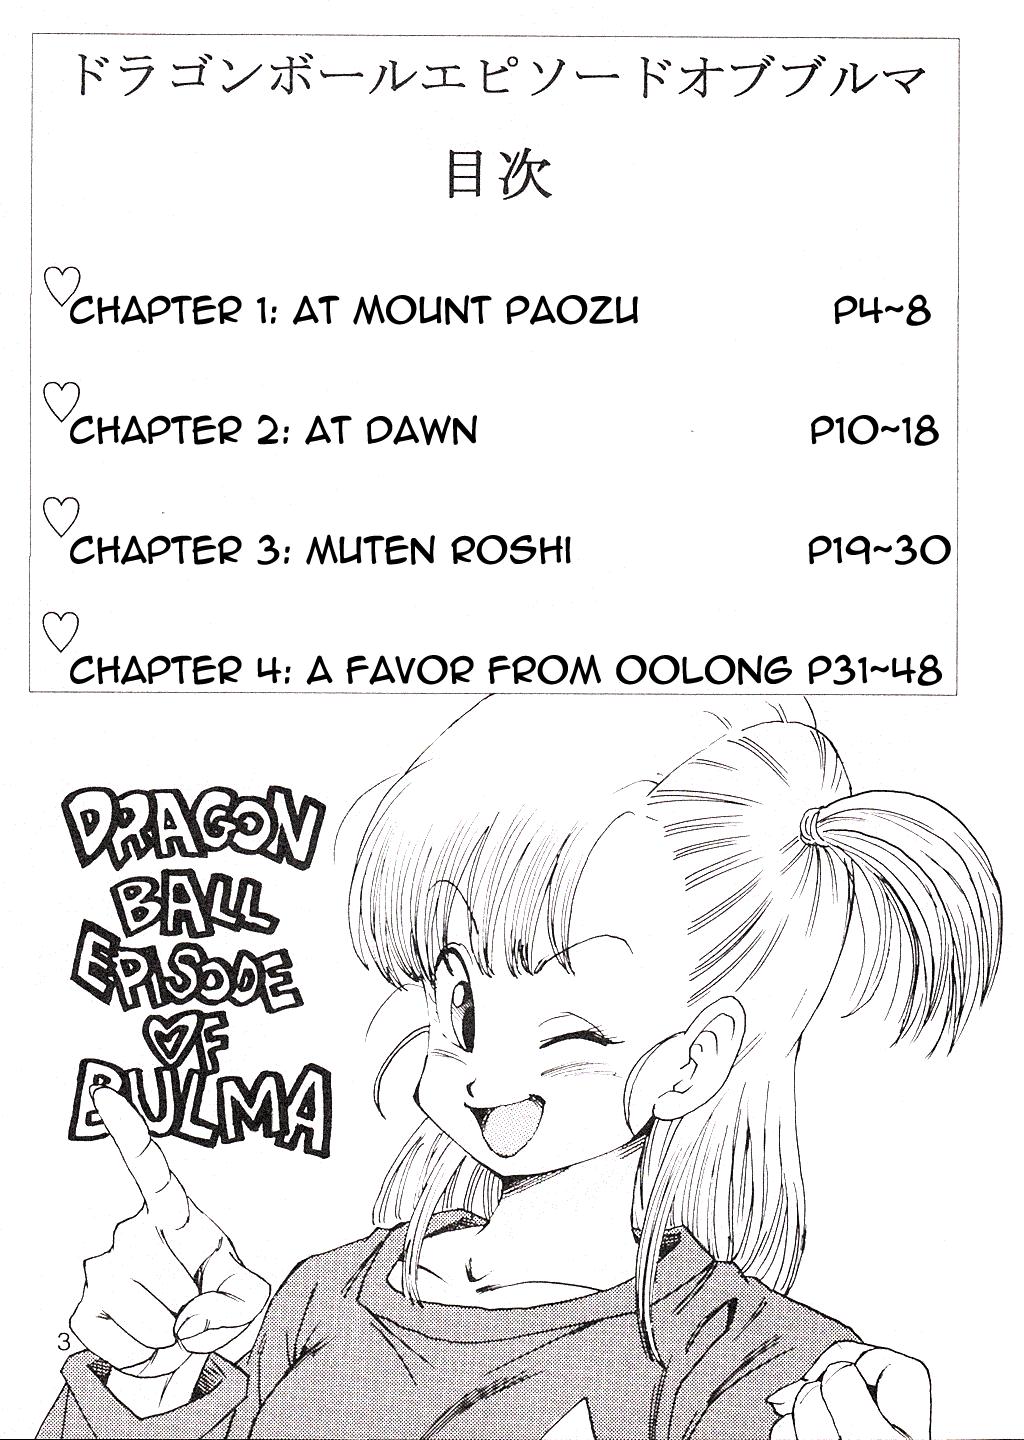 Chubby Dragon Ball EB Episode of Bulma - Dragon ball Couples - Page 4